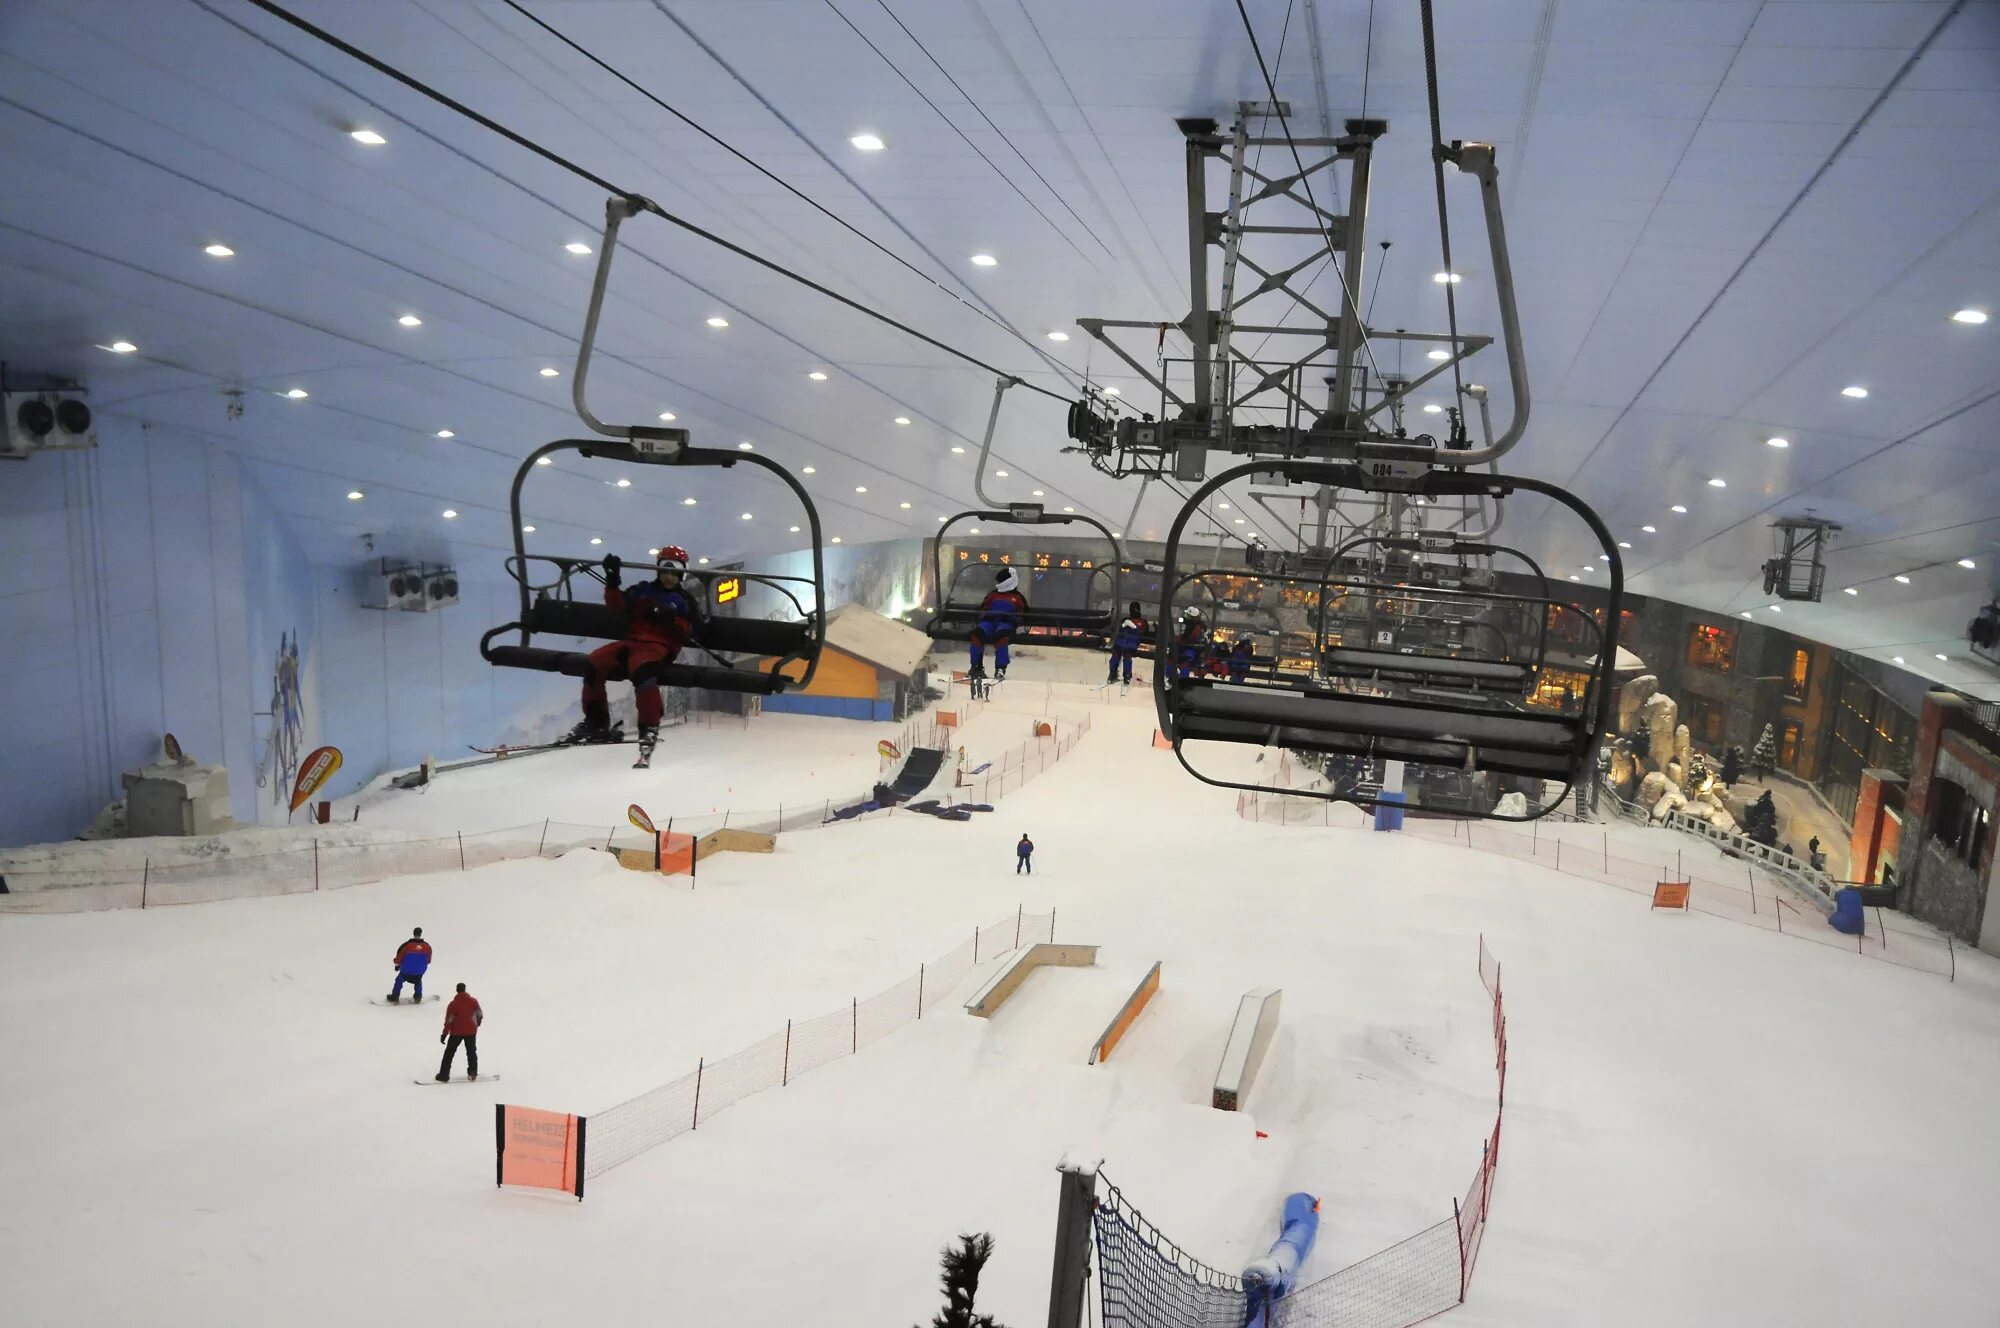 Дубай горнолыжный. Ski Dubai Дубай. Горнолыжный комплекс Ski Dubai. Скай Дубай Ski Dubai. Горнолыжный склон в Дубае.